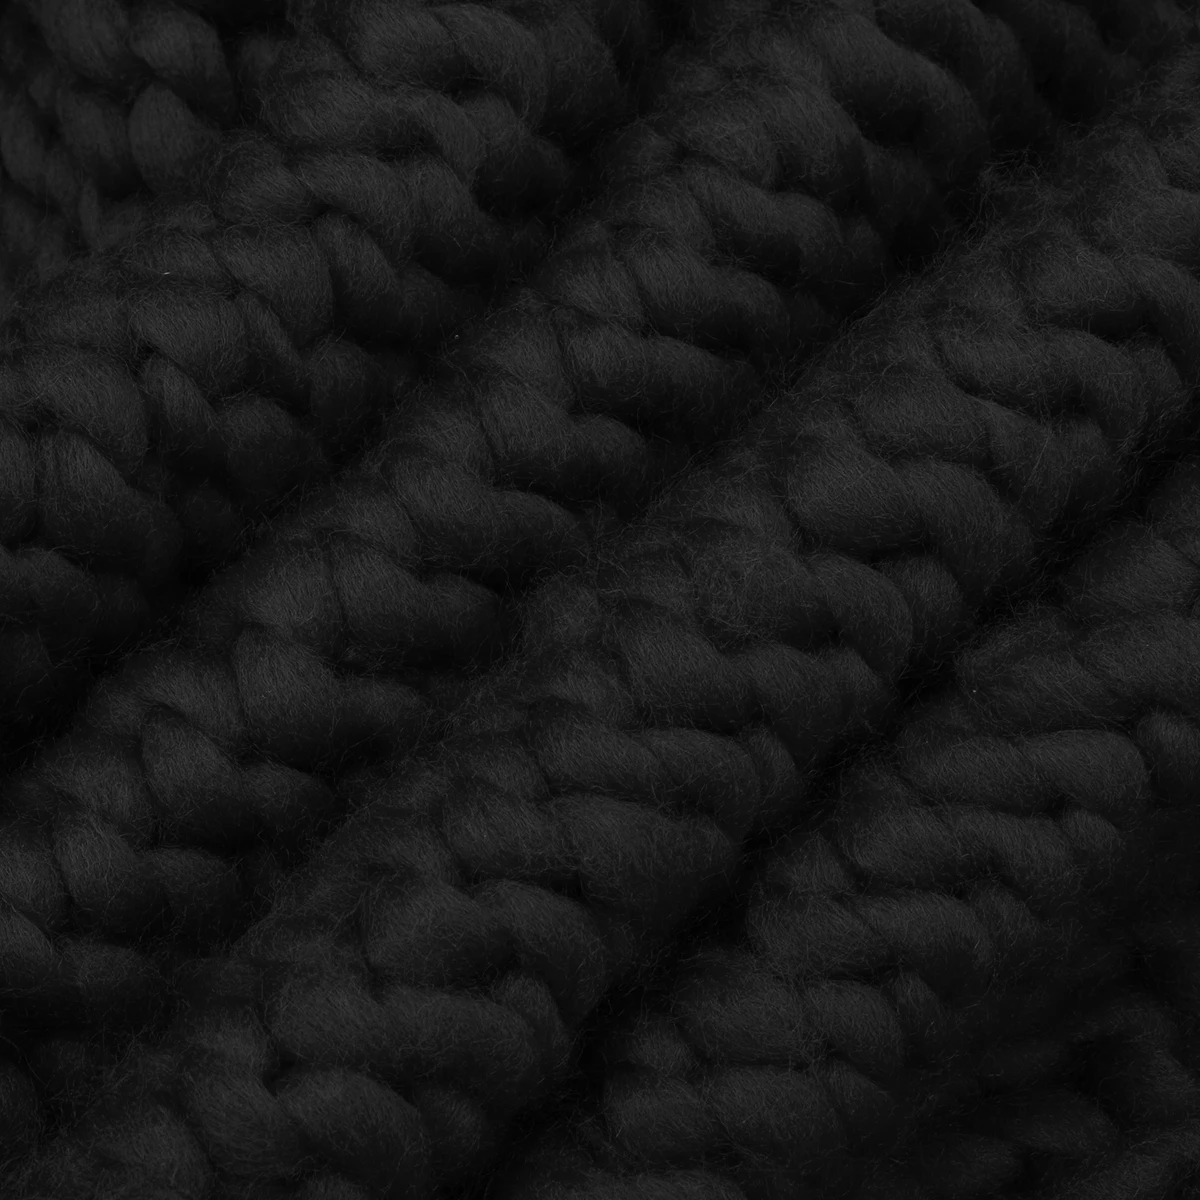 Мягкое массивное вязаное одеяло пледы для зимней кровати дивана толстой пряжи вязания пледы дивана покрывало одеяло s ультра плюшевый Декор для спальни - Цвет: black